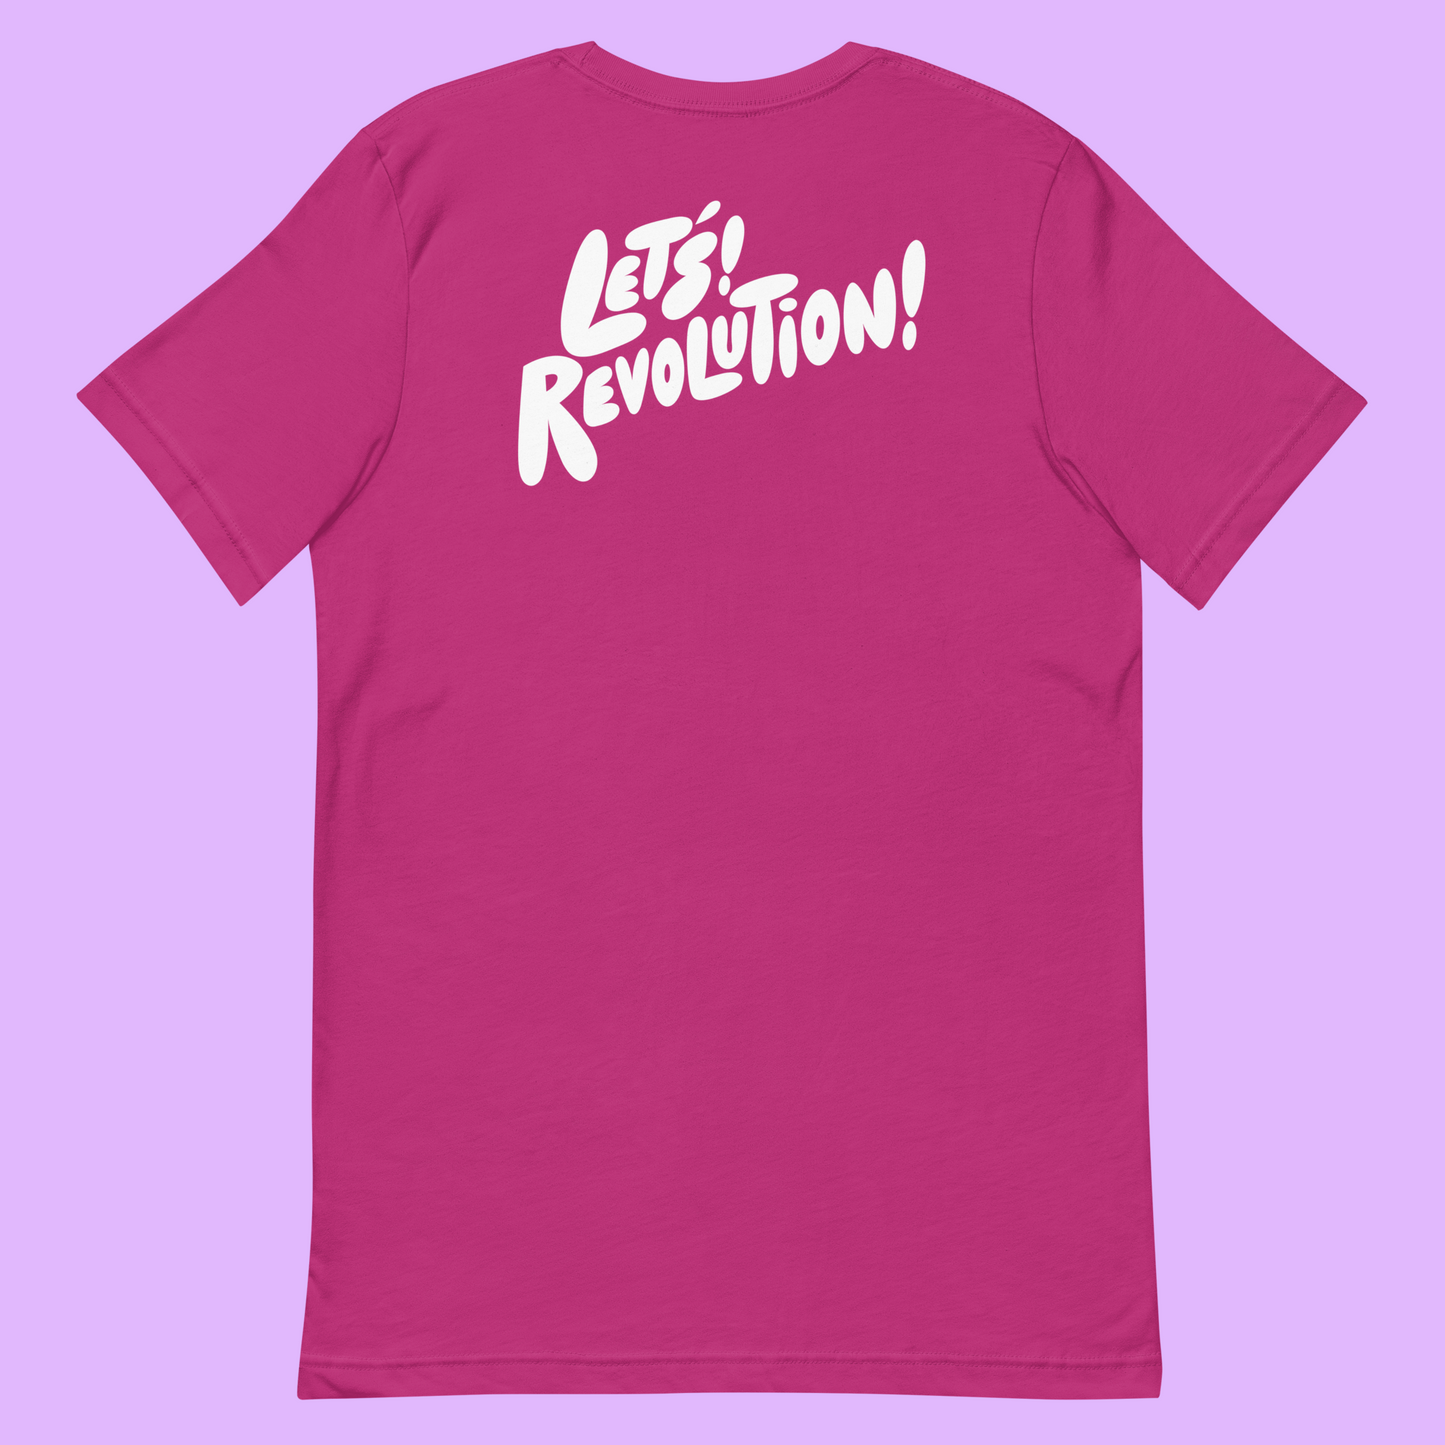 Let's! Revolution! T-Shirt - Champ